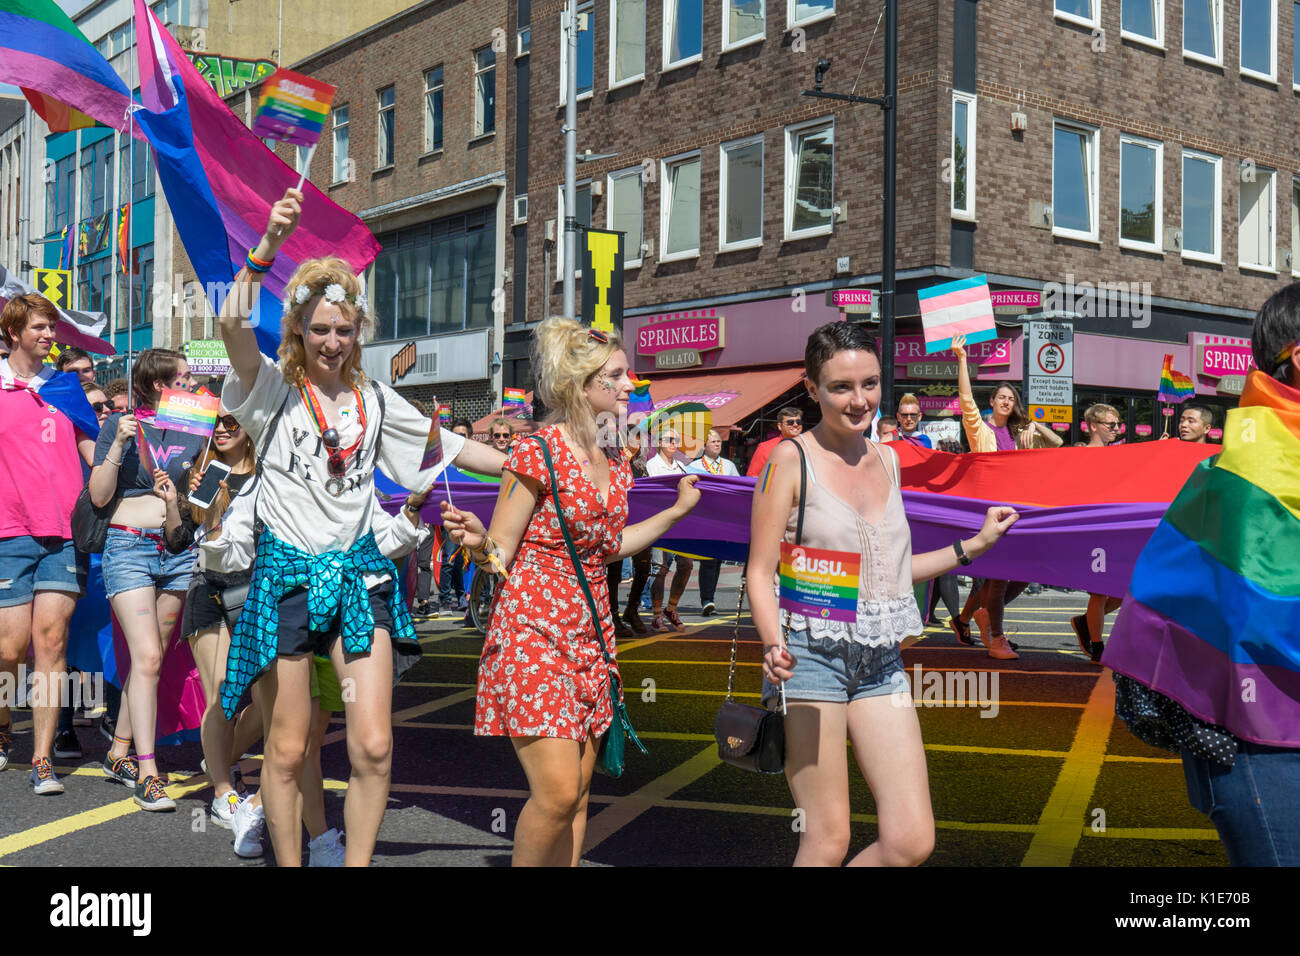 Southampton, Großbritannien. August 2017. Menschen marschieren durch die Straßen von Southampton, um an einer sehr bunten und lebendigen Parade beim jährlichen Southampton Pride Festival 2017 teilzunehmen. Dies ist das zweite Jahr des Festivals, das stattfindet. Stockfoto